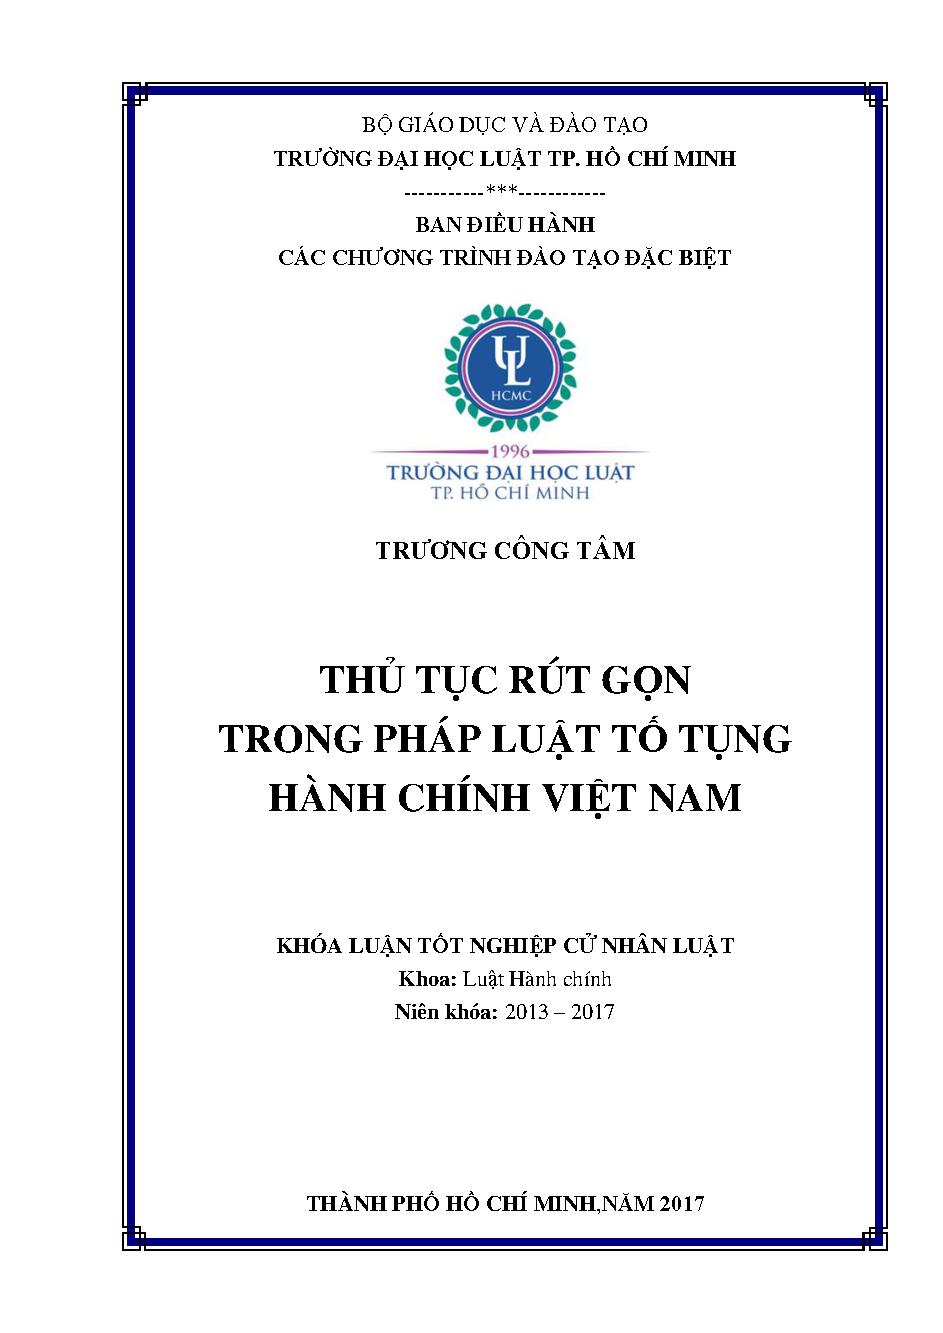 Thủ tục rút gọn trong pháp luật tố tụng hành chính Việt Nam